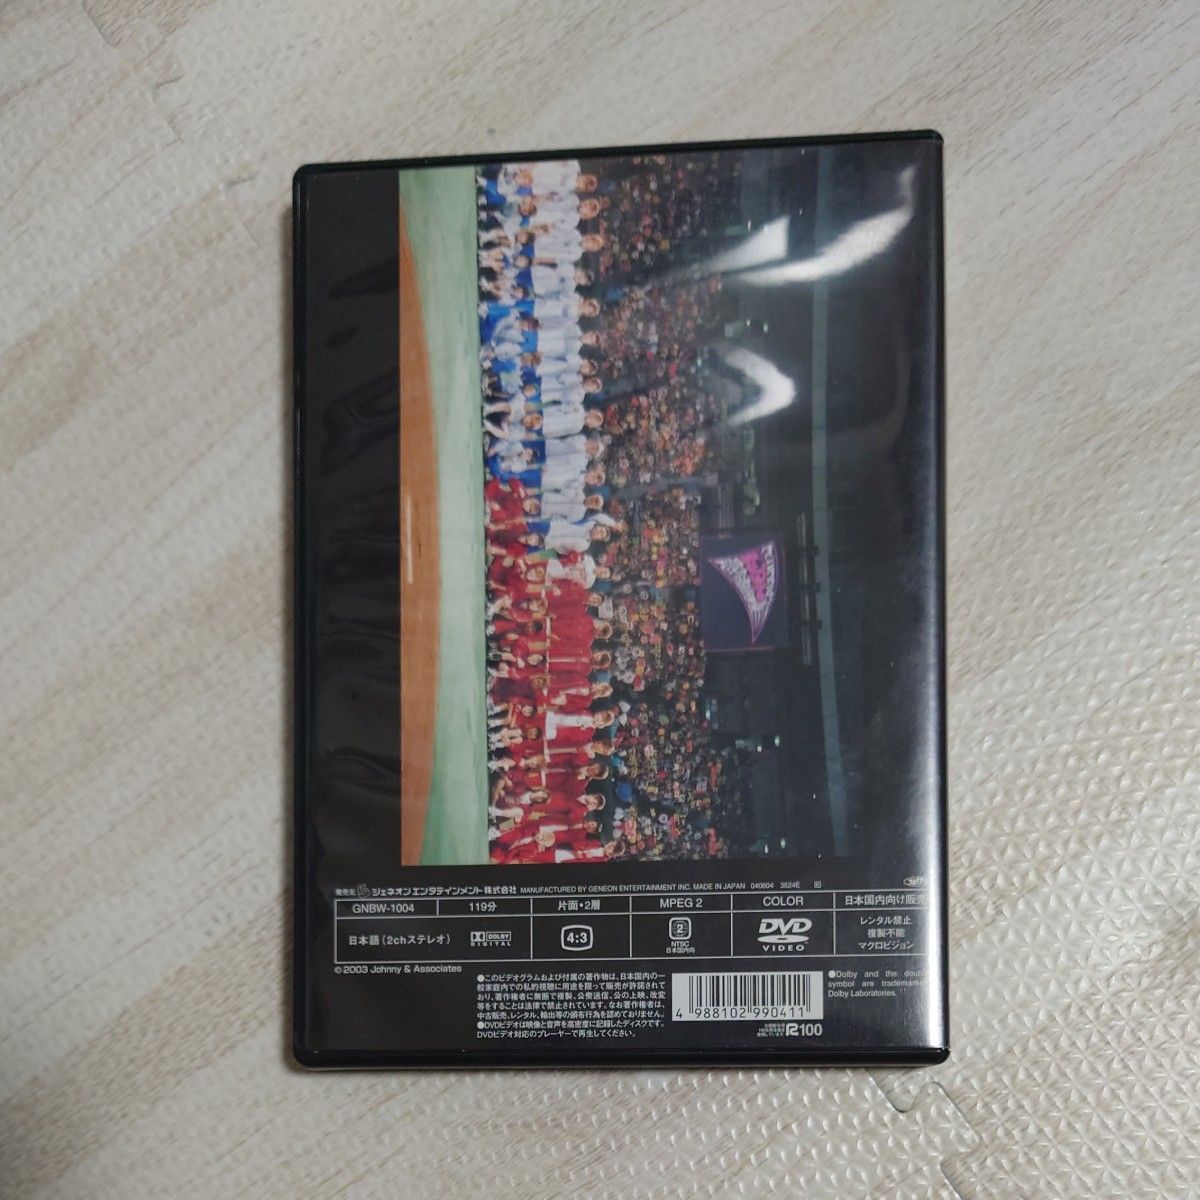 【美品】ジャニーズ 体育の日ファン感謝祭 (通常版) DVD Kinki kids V6 TOKIO 滝沢秀明 大野智 